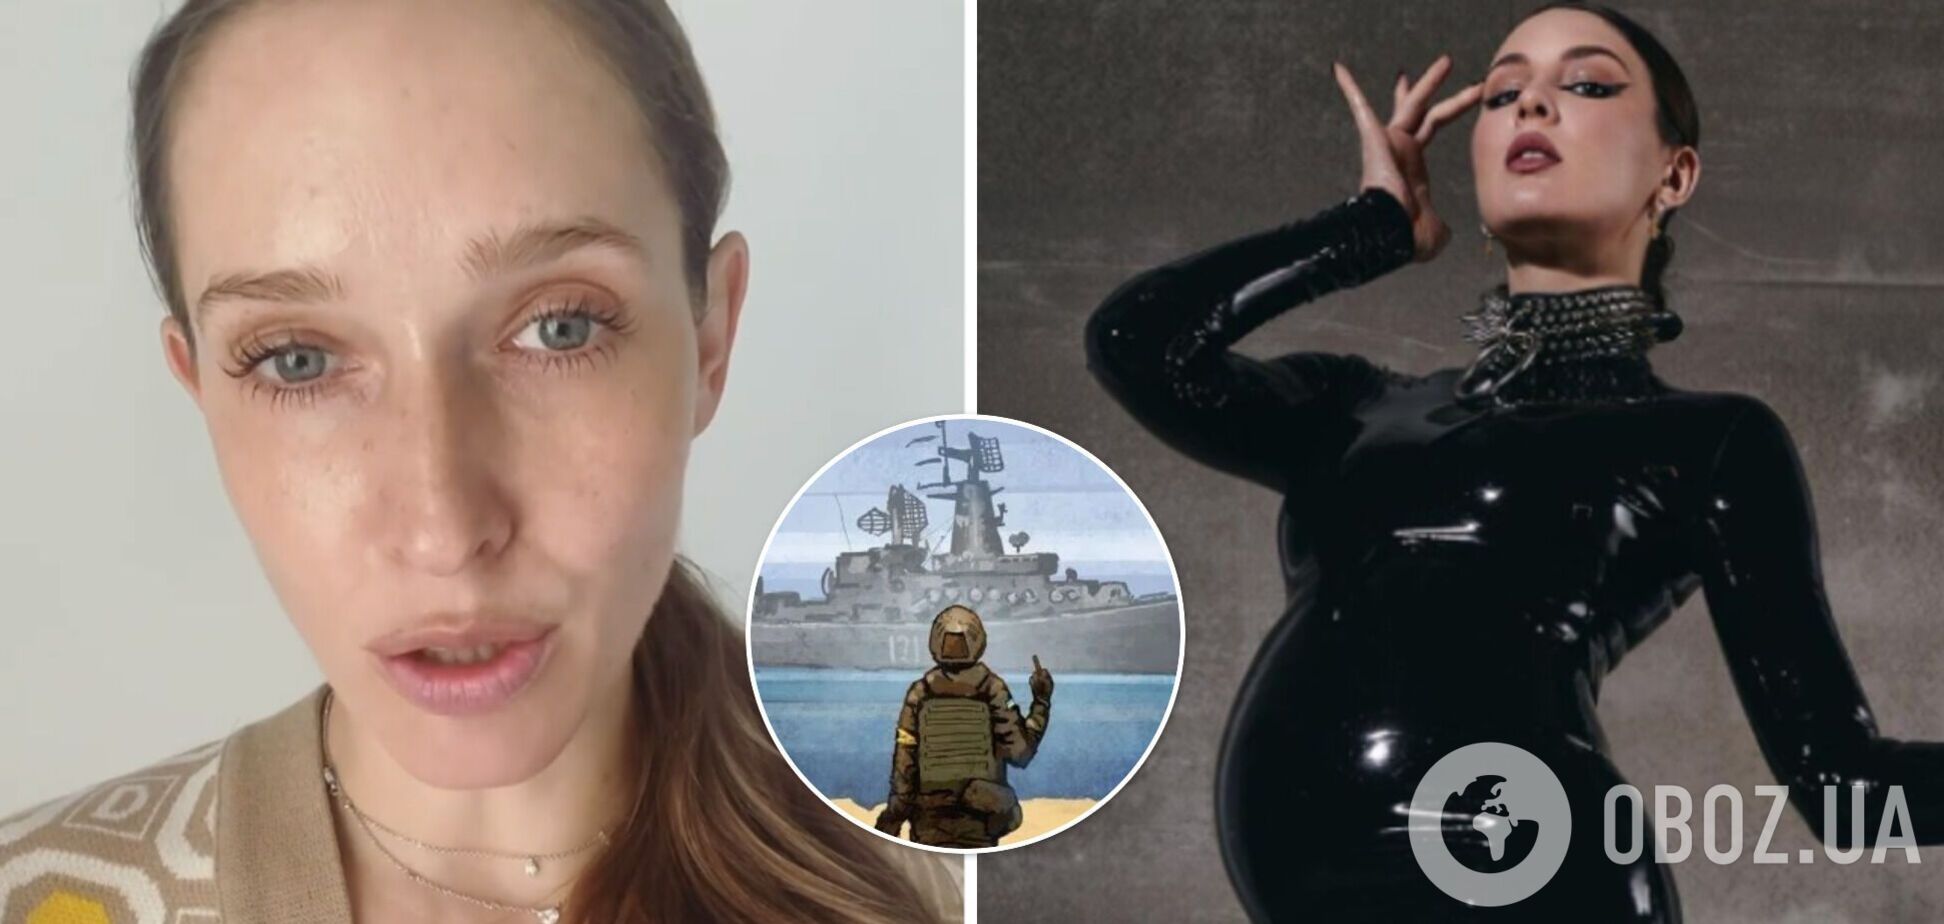 Осадчая резко обратилась к MARUV: отдай украинский паспорт и иди вслед за кораблем